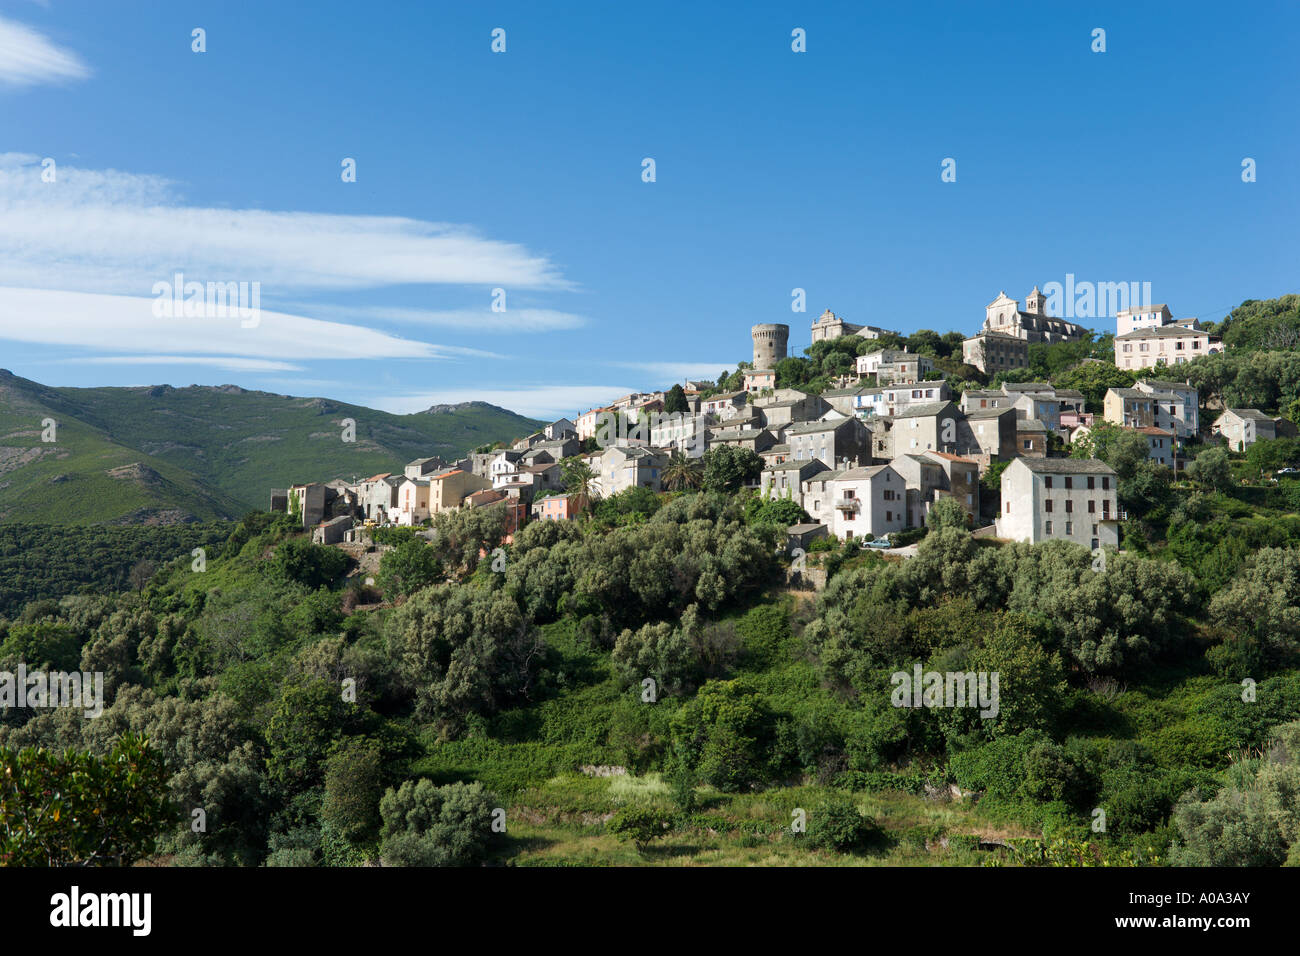 Le village traditionnel de montagne de Rogliano, Cap Corse, Corse, France Banque D'Images